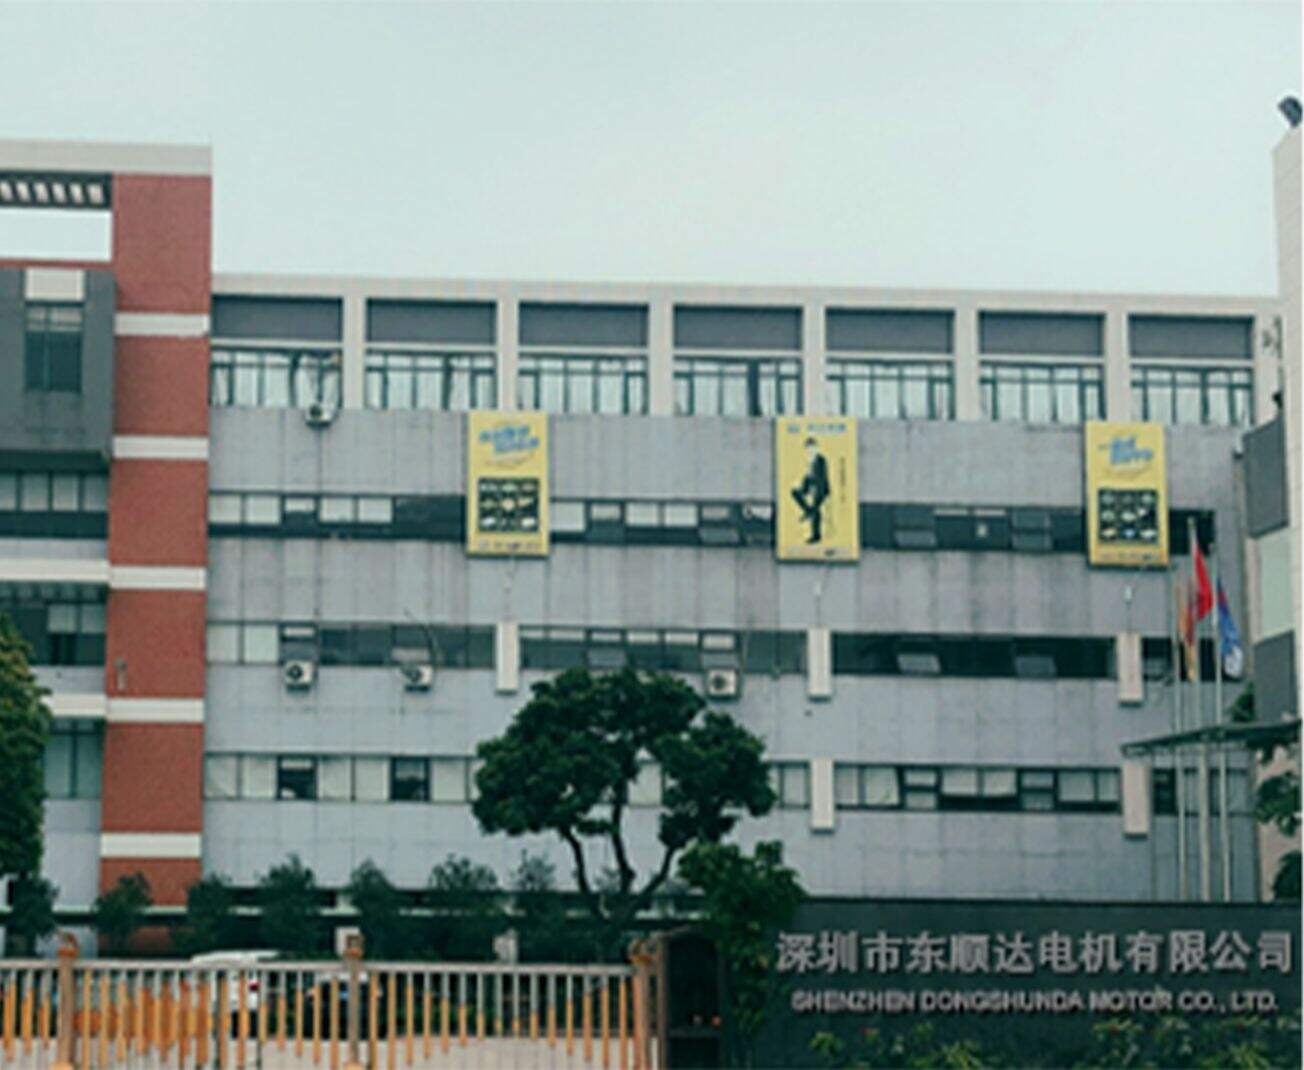 IShenzhen Dongshunda Motor Co.